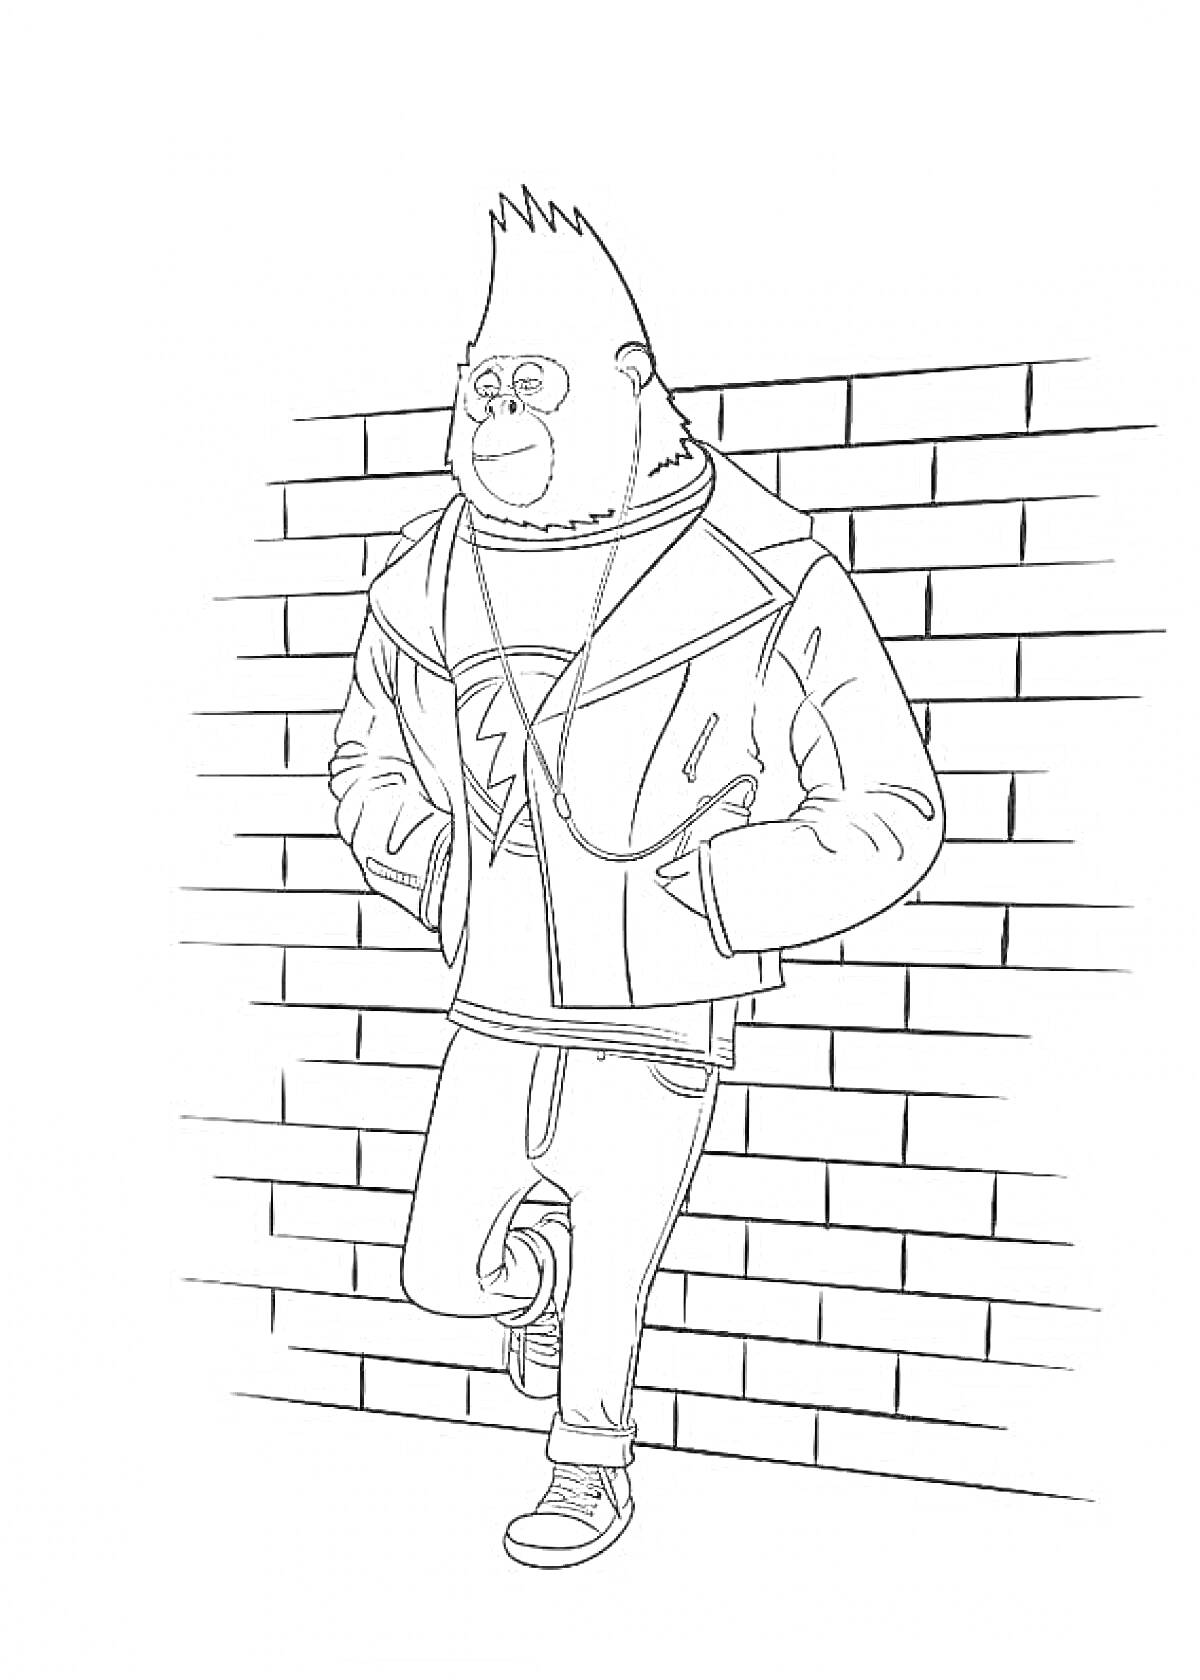 Обезьяна в куртке возле кирпичной стены